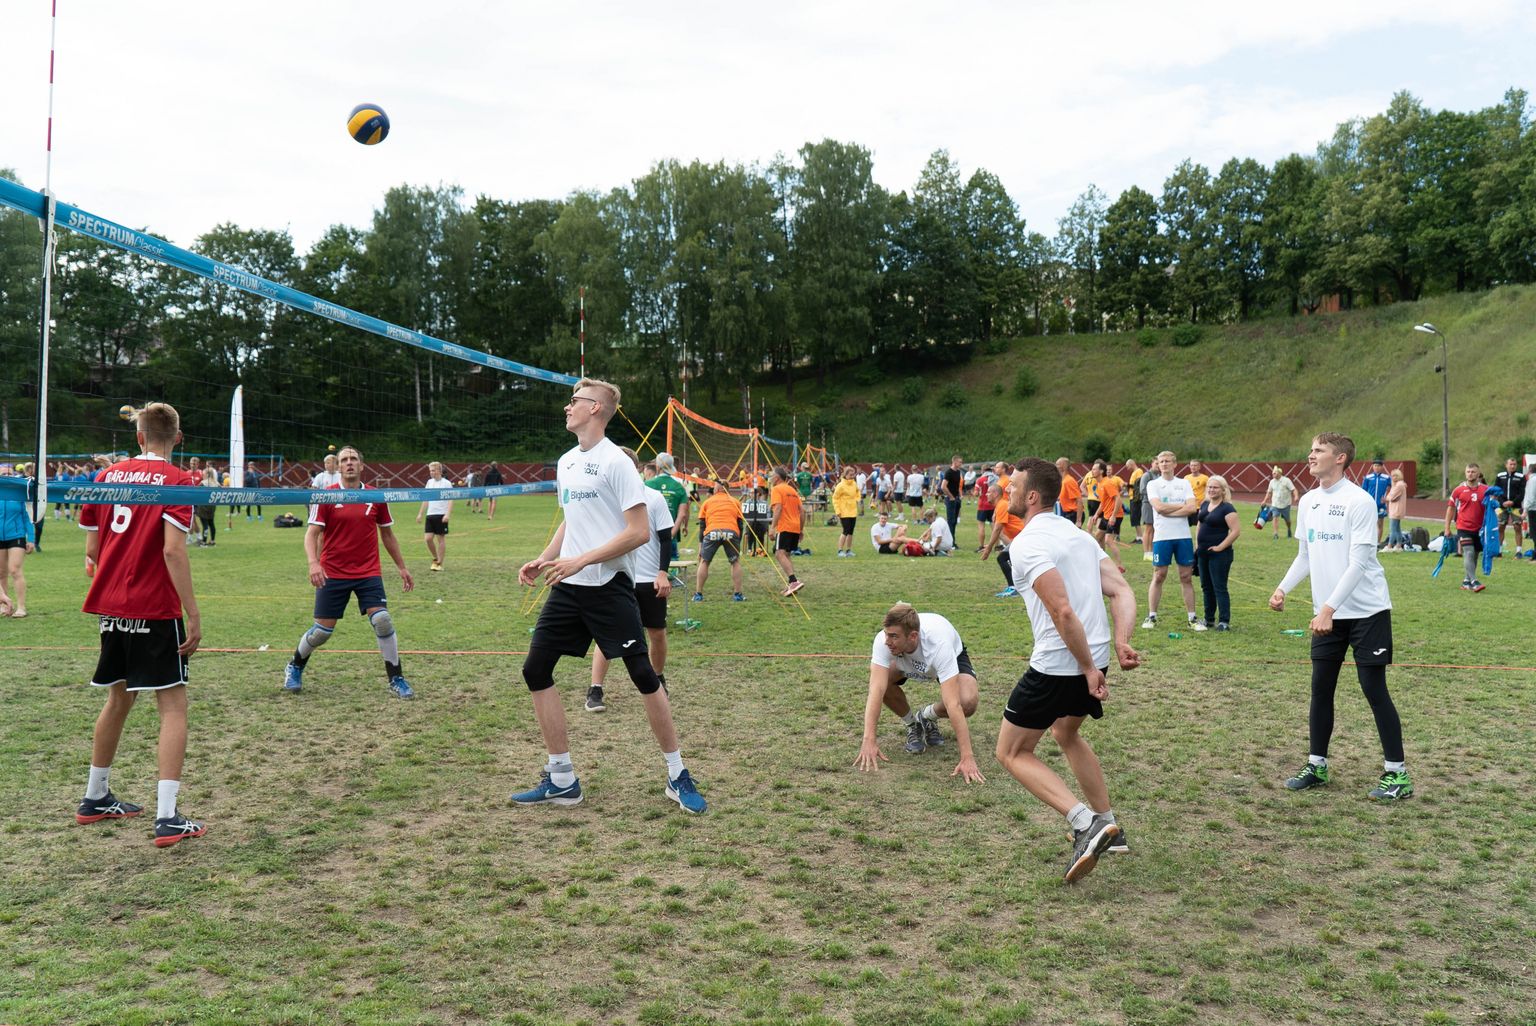 Eestimaa Suvemängud ühendavad kogu Eesti ja ka erinevad põlvkonnad ning seda suuresti tänu piirkondlike spordiliitude pikaajalisele pingutusele.